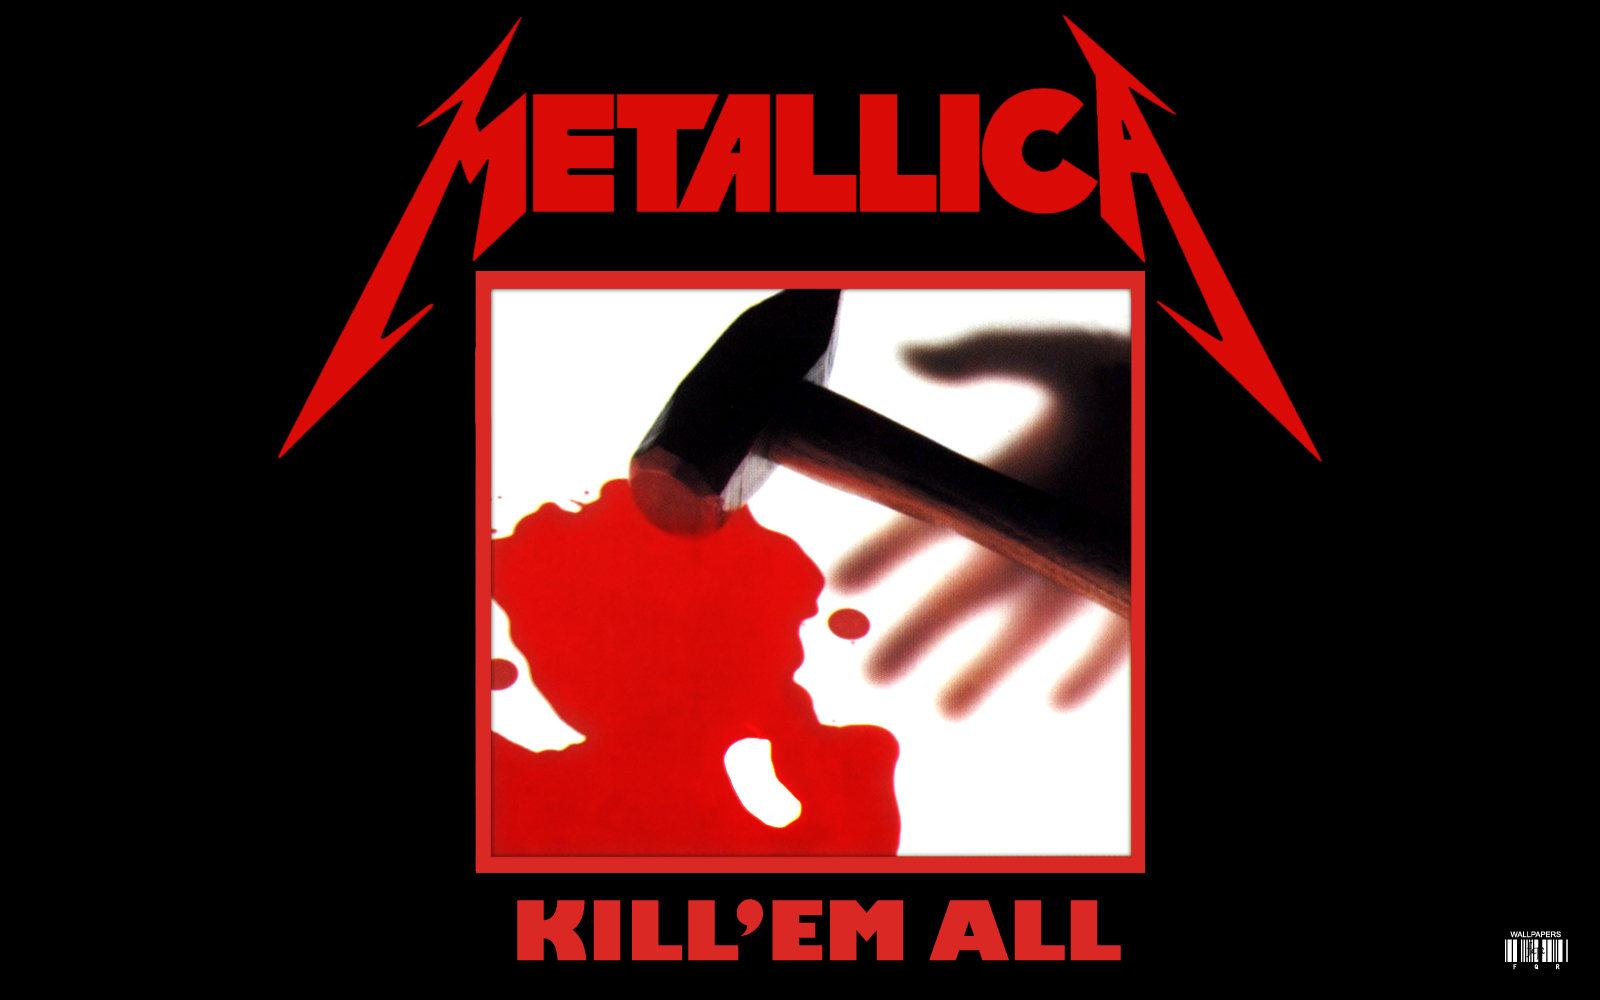 Metallica Kill em all album